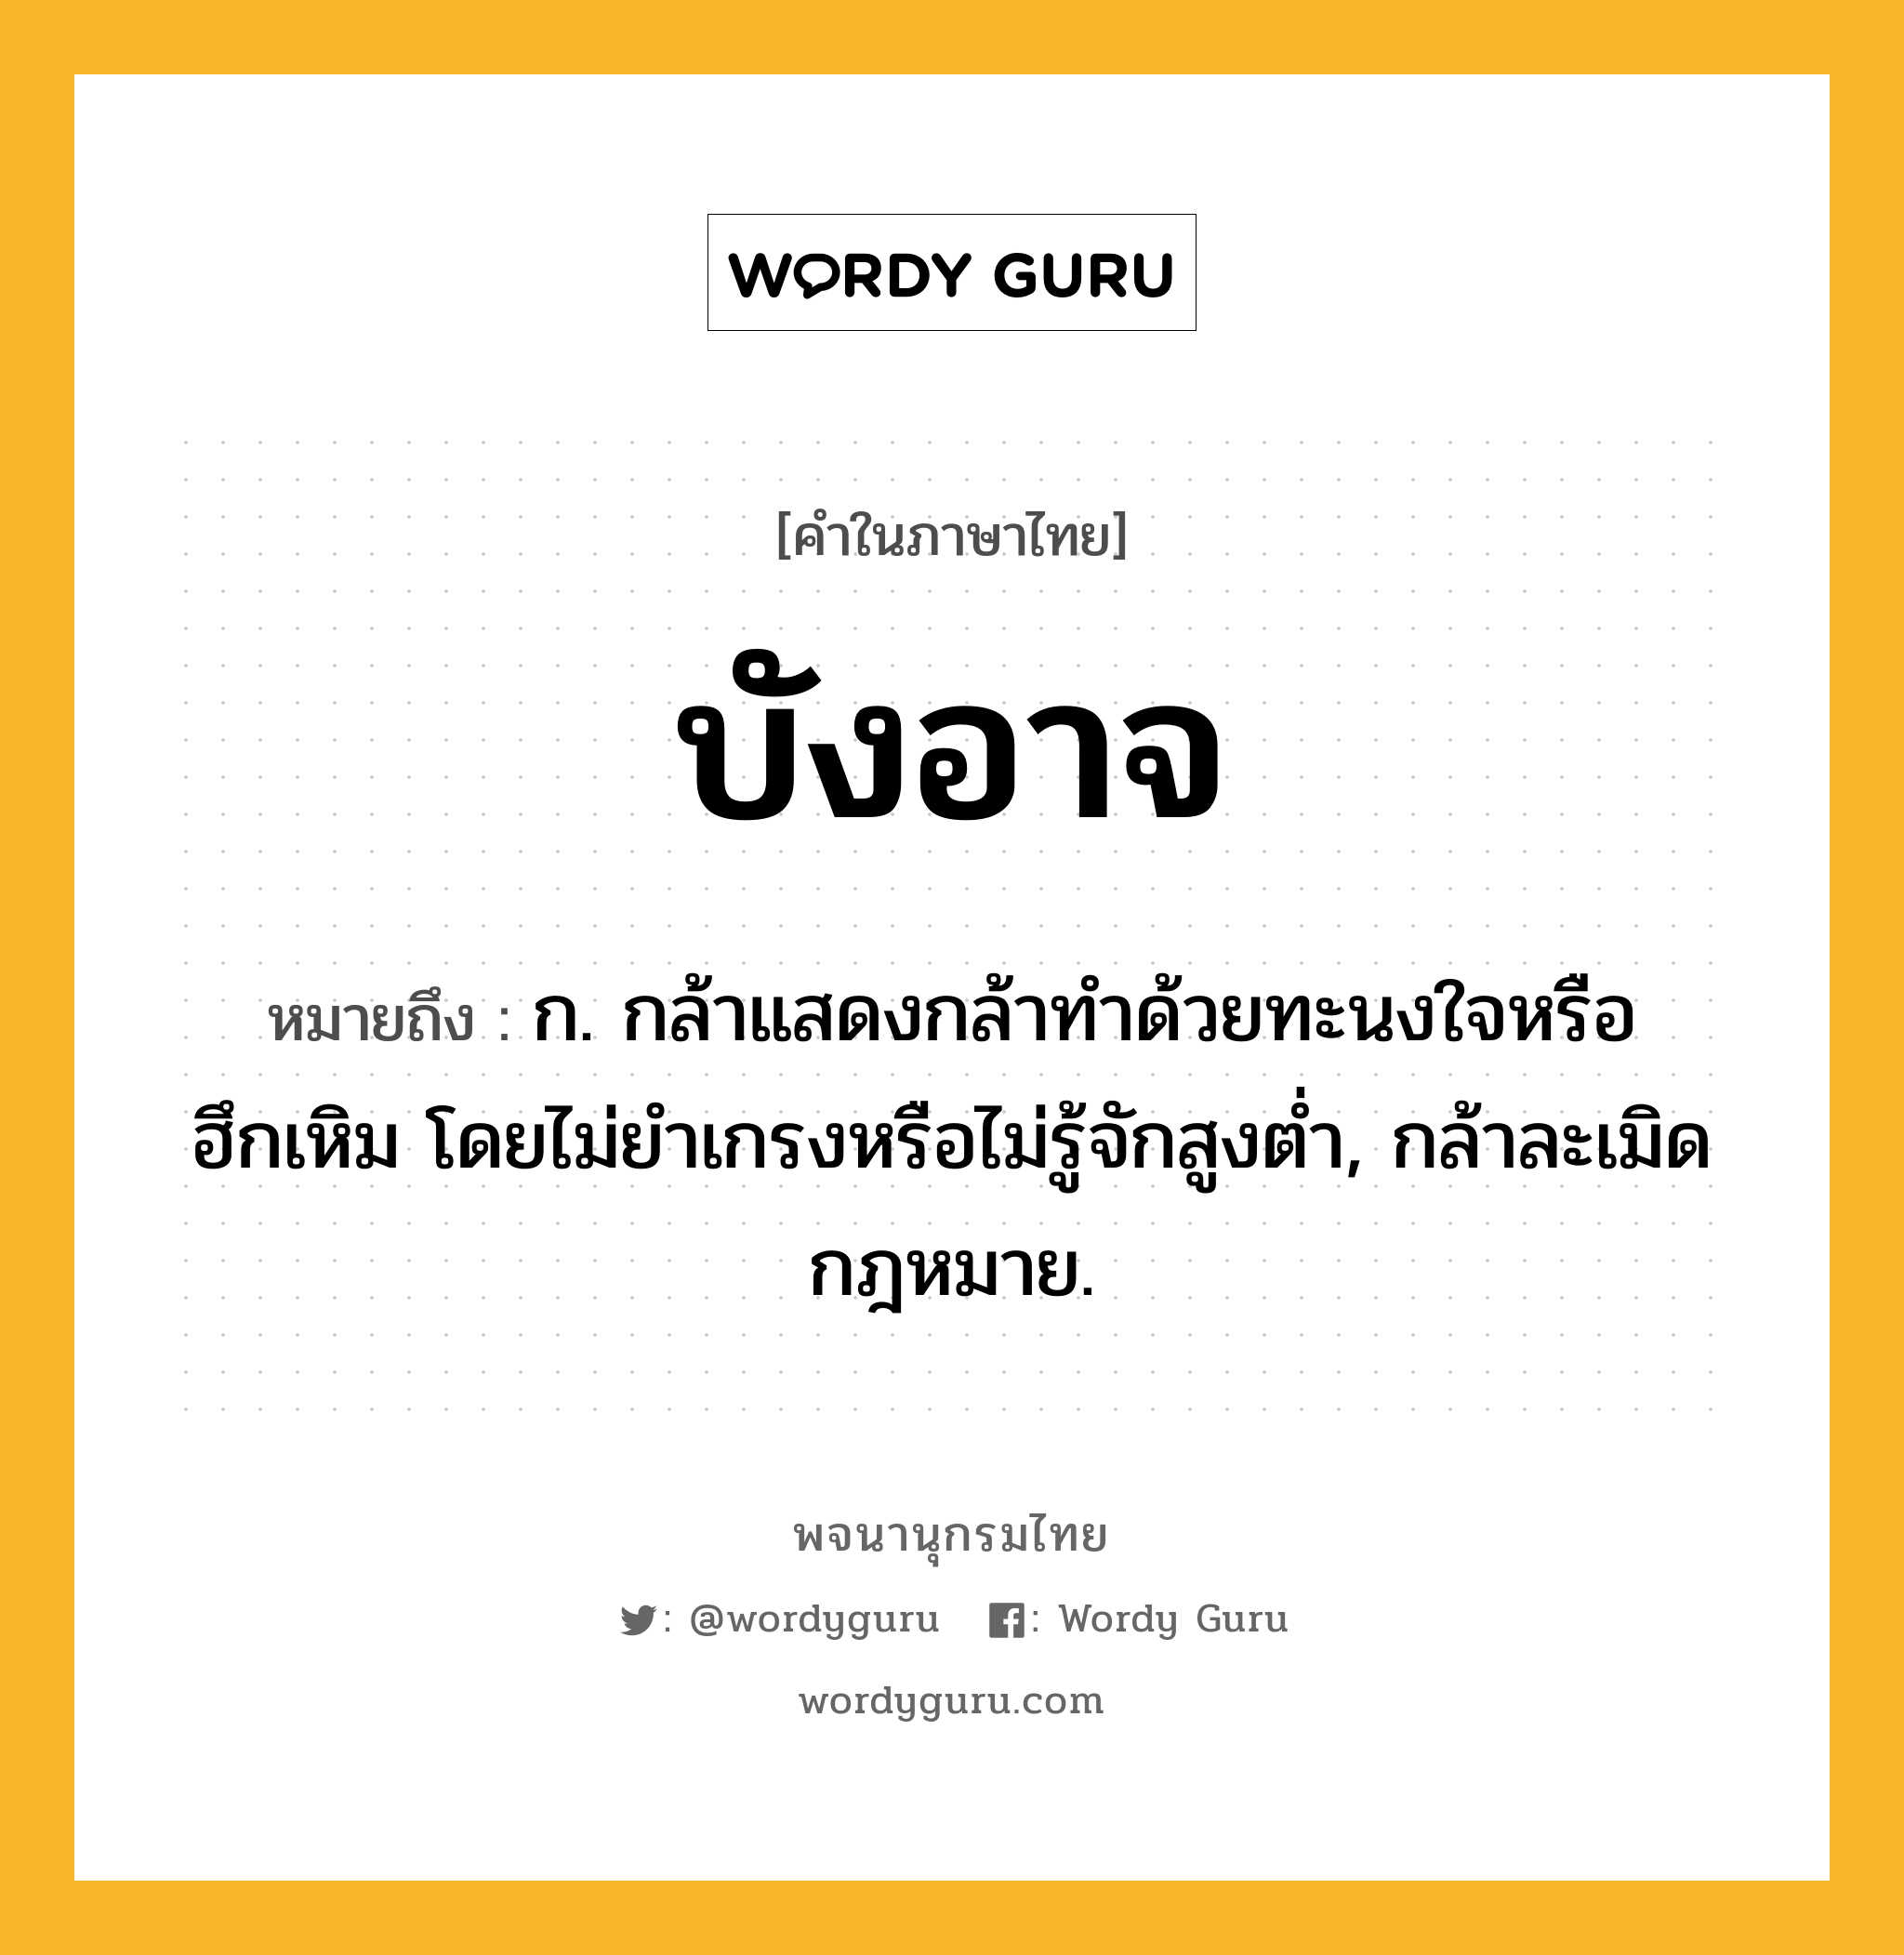 บังอาจ ความหมาย หมายถึงอะไร?, คำในภาษาไทย บังอาจ หมายถึง ก. กล้าแสดงกล้าทําด้วยทะนงใจหรือฮึกเหิม โดยไม่ยําเกรงหรือไม่รู้จักสูงตํ่า, กล้าละเมิดกฎหมาย.